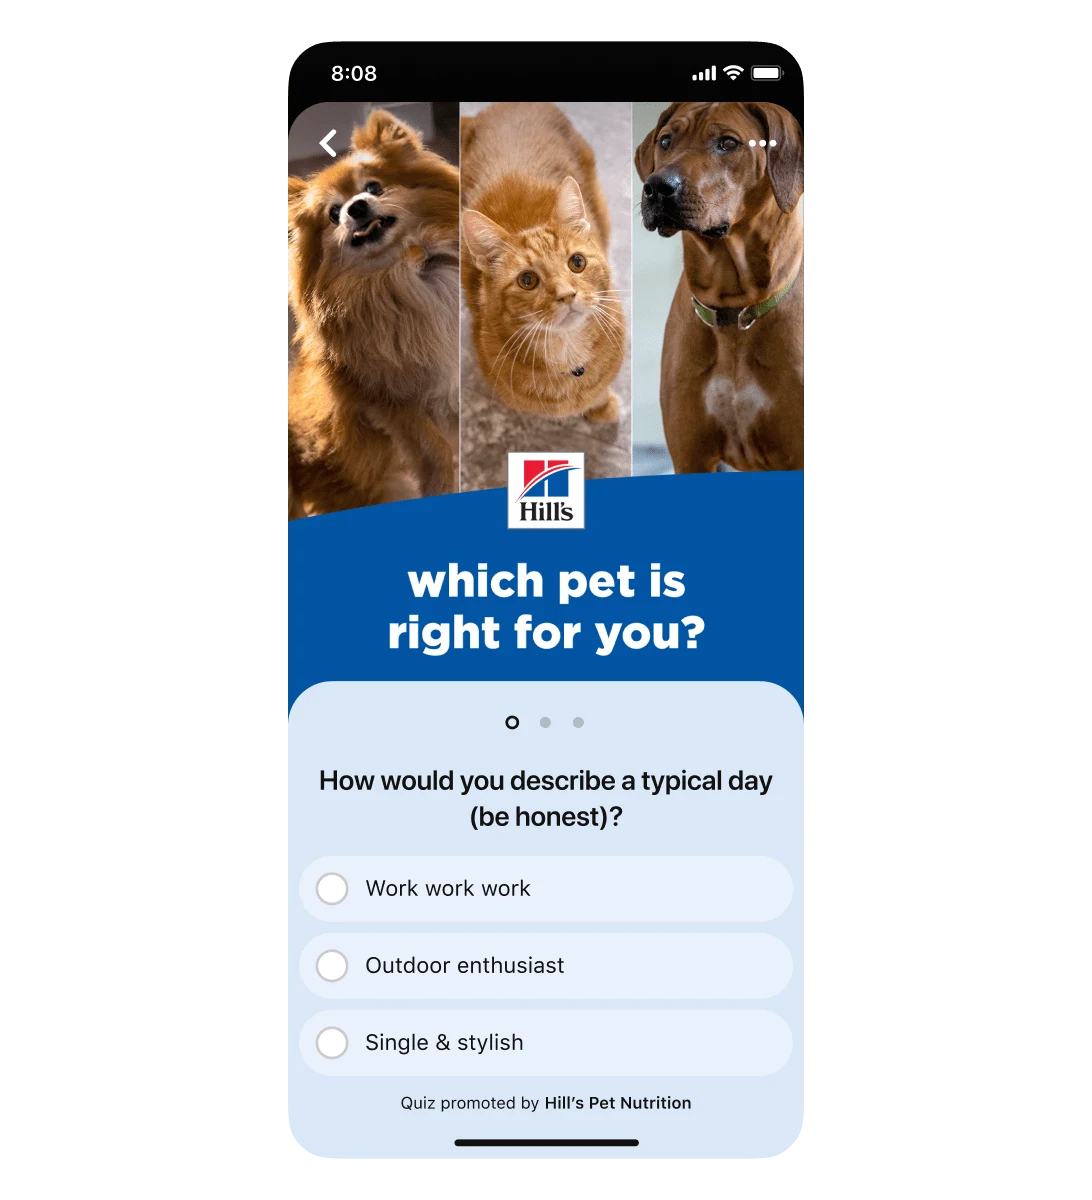 มุมมองหน้าจอมือถือของโฆษณาแบบตอบคำถามของ Pinterest สำหรับ Hill's Pet Nutrition โดยมีคำถามแรกคือ “คุณจะบรรยายวันธรรมดาๆ ของคุณอย่างไร (แบบจริงใจ)” ตัวเลือกคำตอบสามข้อคือ “ทำงาน ทำงาน ทำงาน” “คนชอบกิจกรรมกลางแจ้ง” และ “โสดและมีสไตล์”